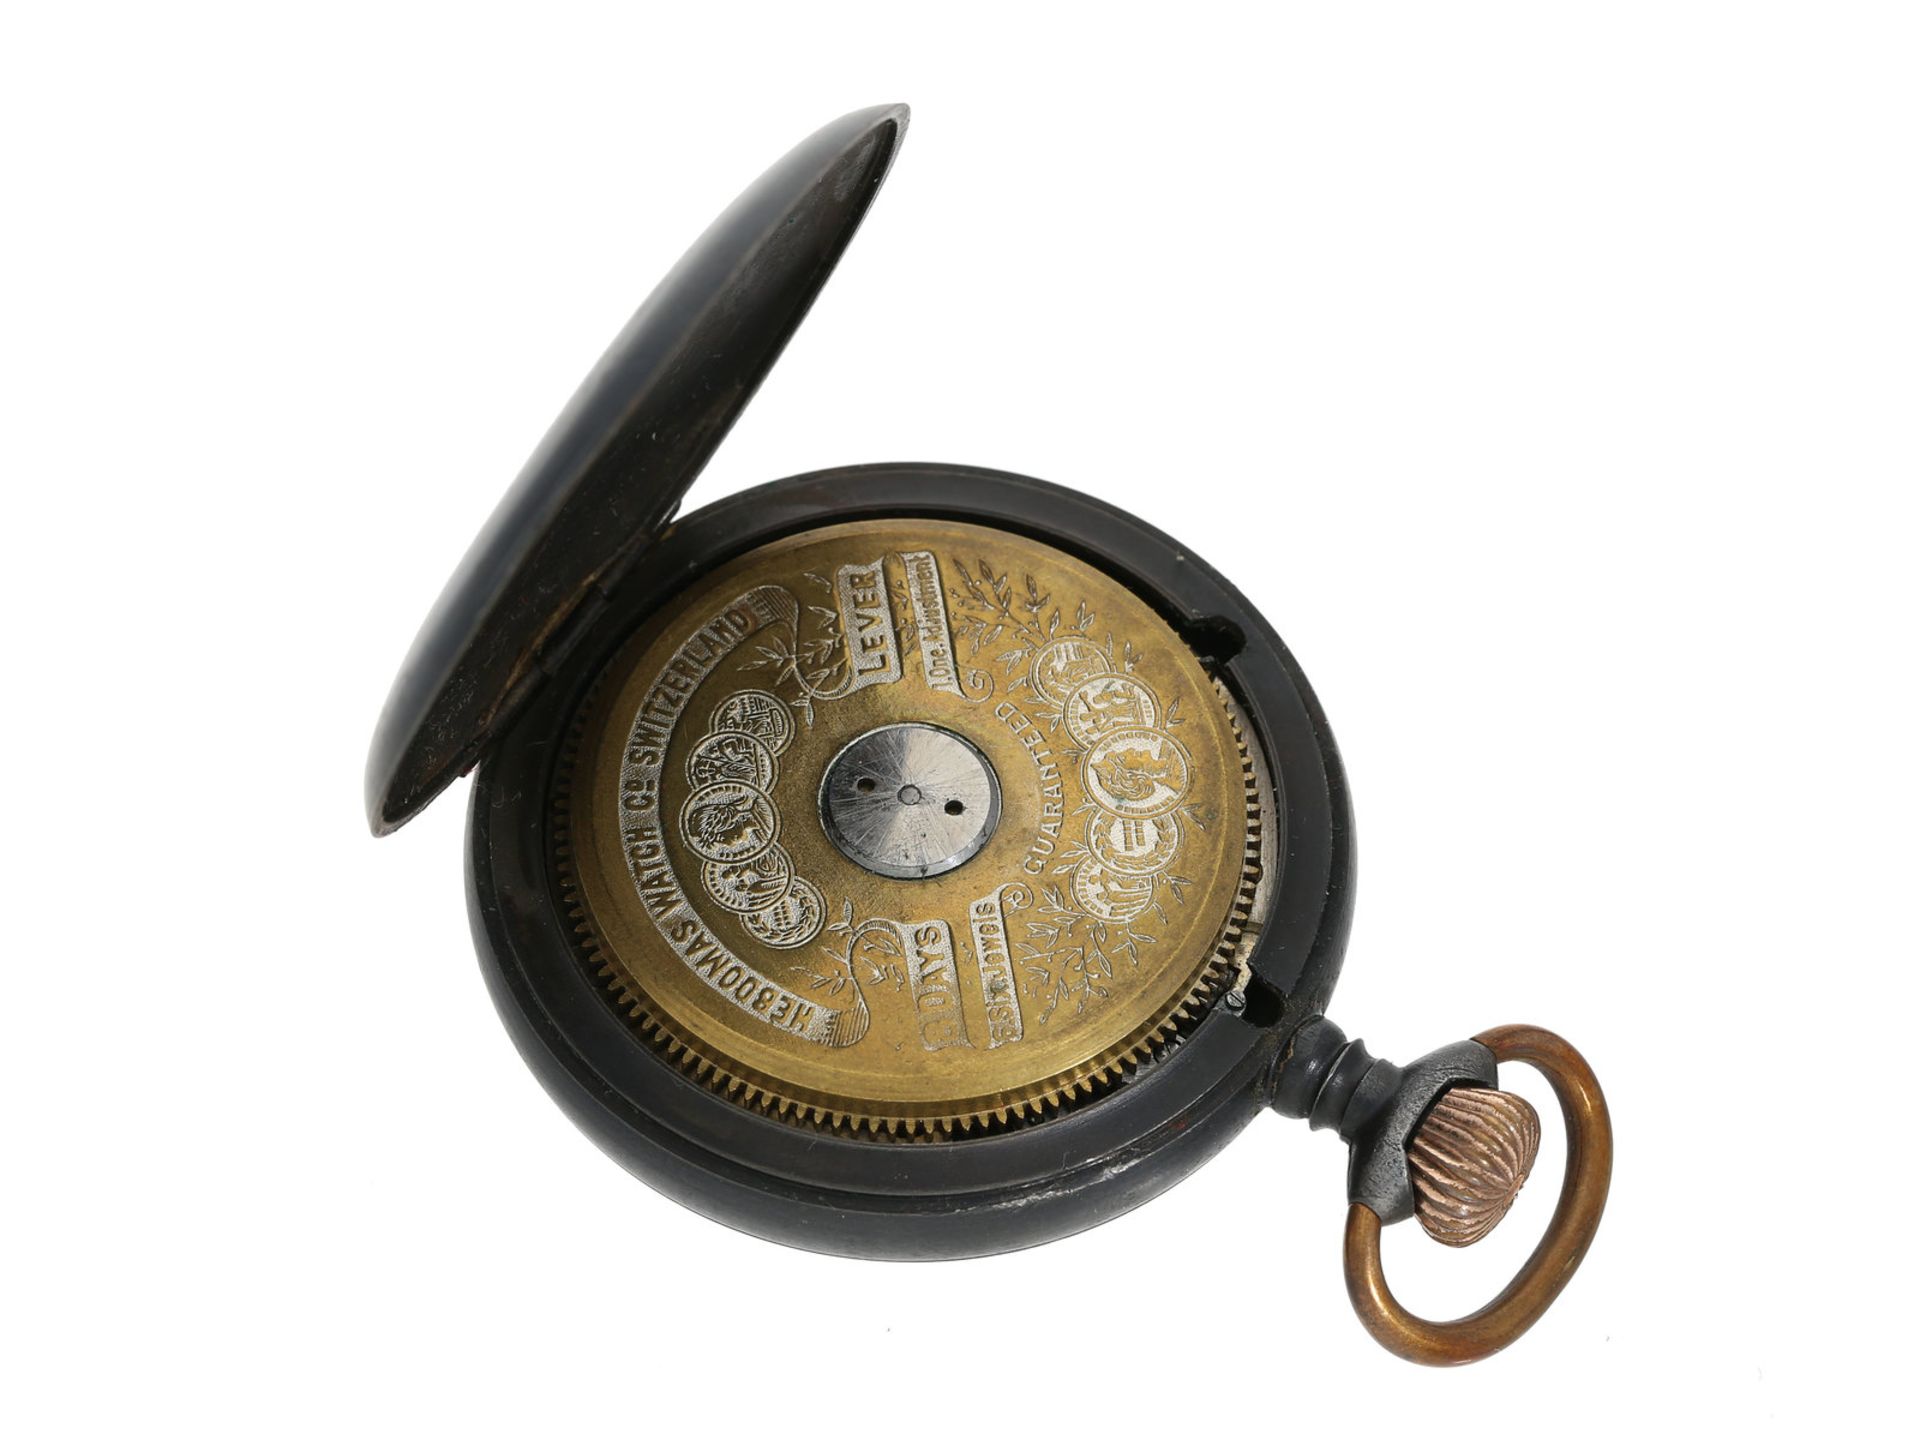 Taschenuhr: sehr seltene Hebdomas 8-Tage-Taschenuhr mit Kalender, gefertigt für Bennett, New Yo - Bild 2 aus 2